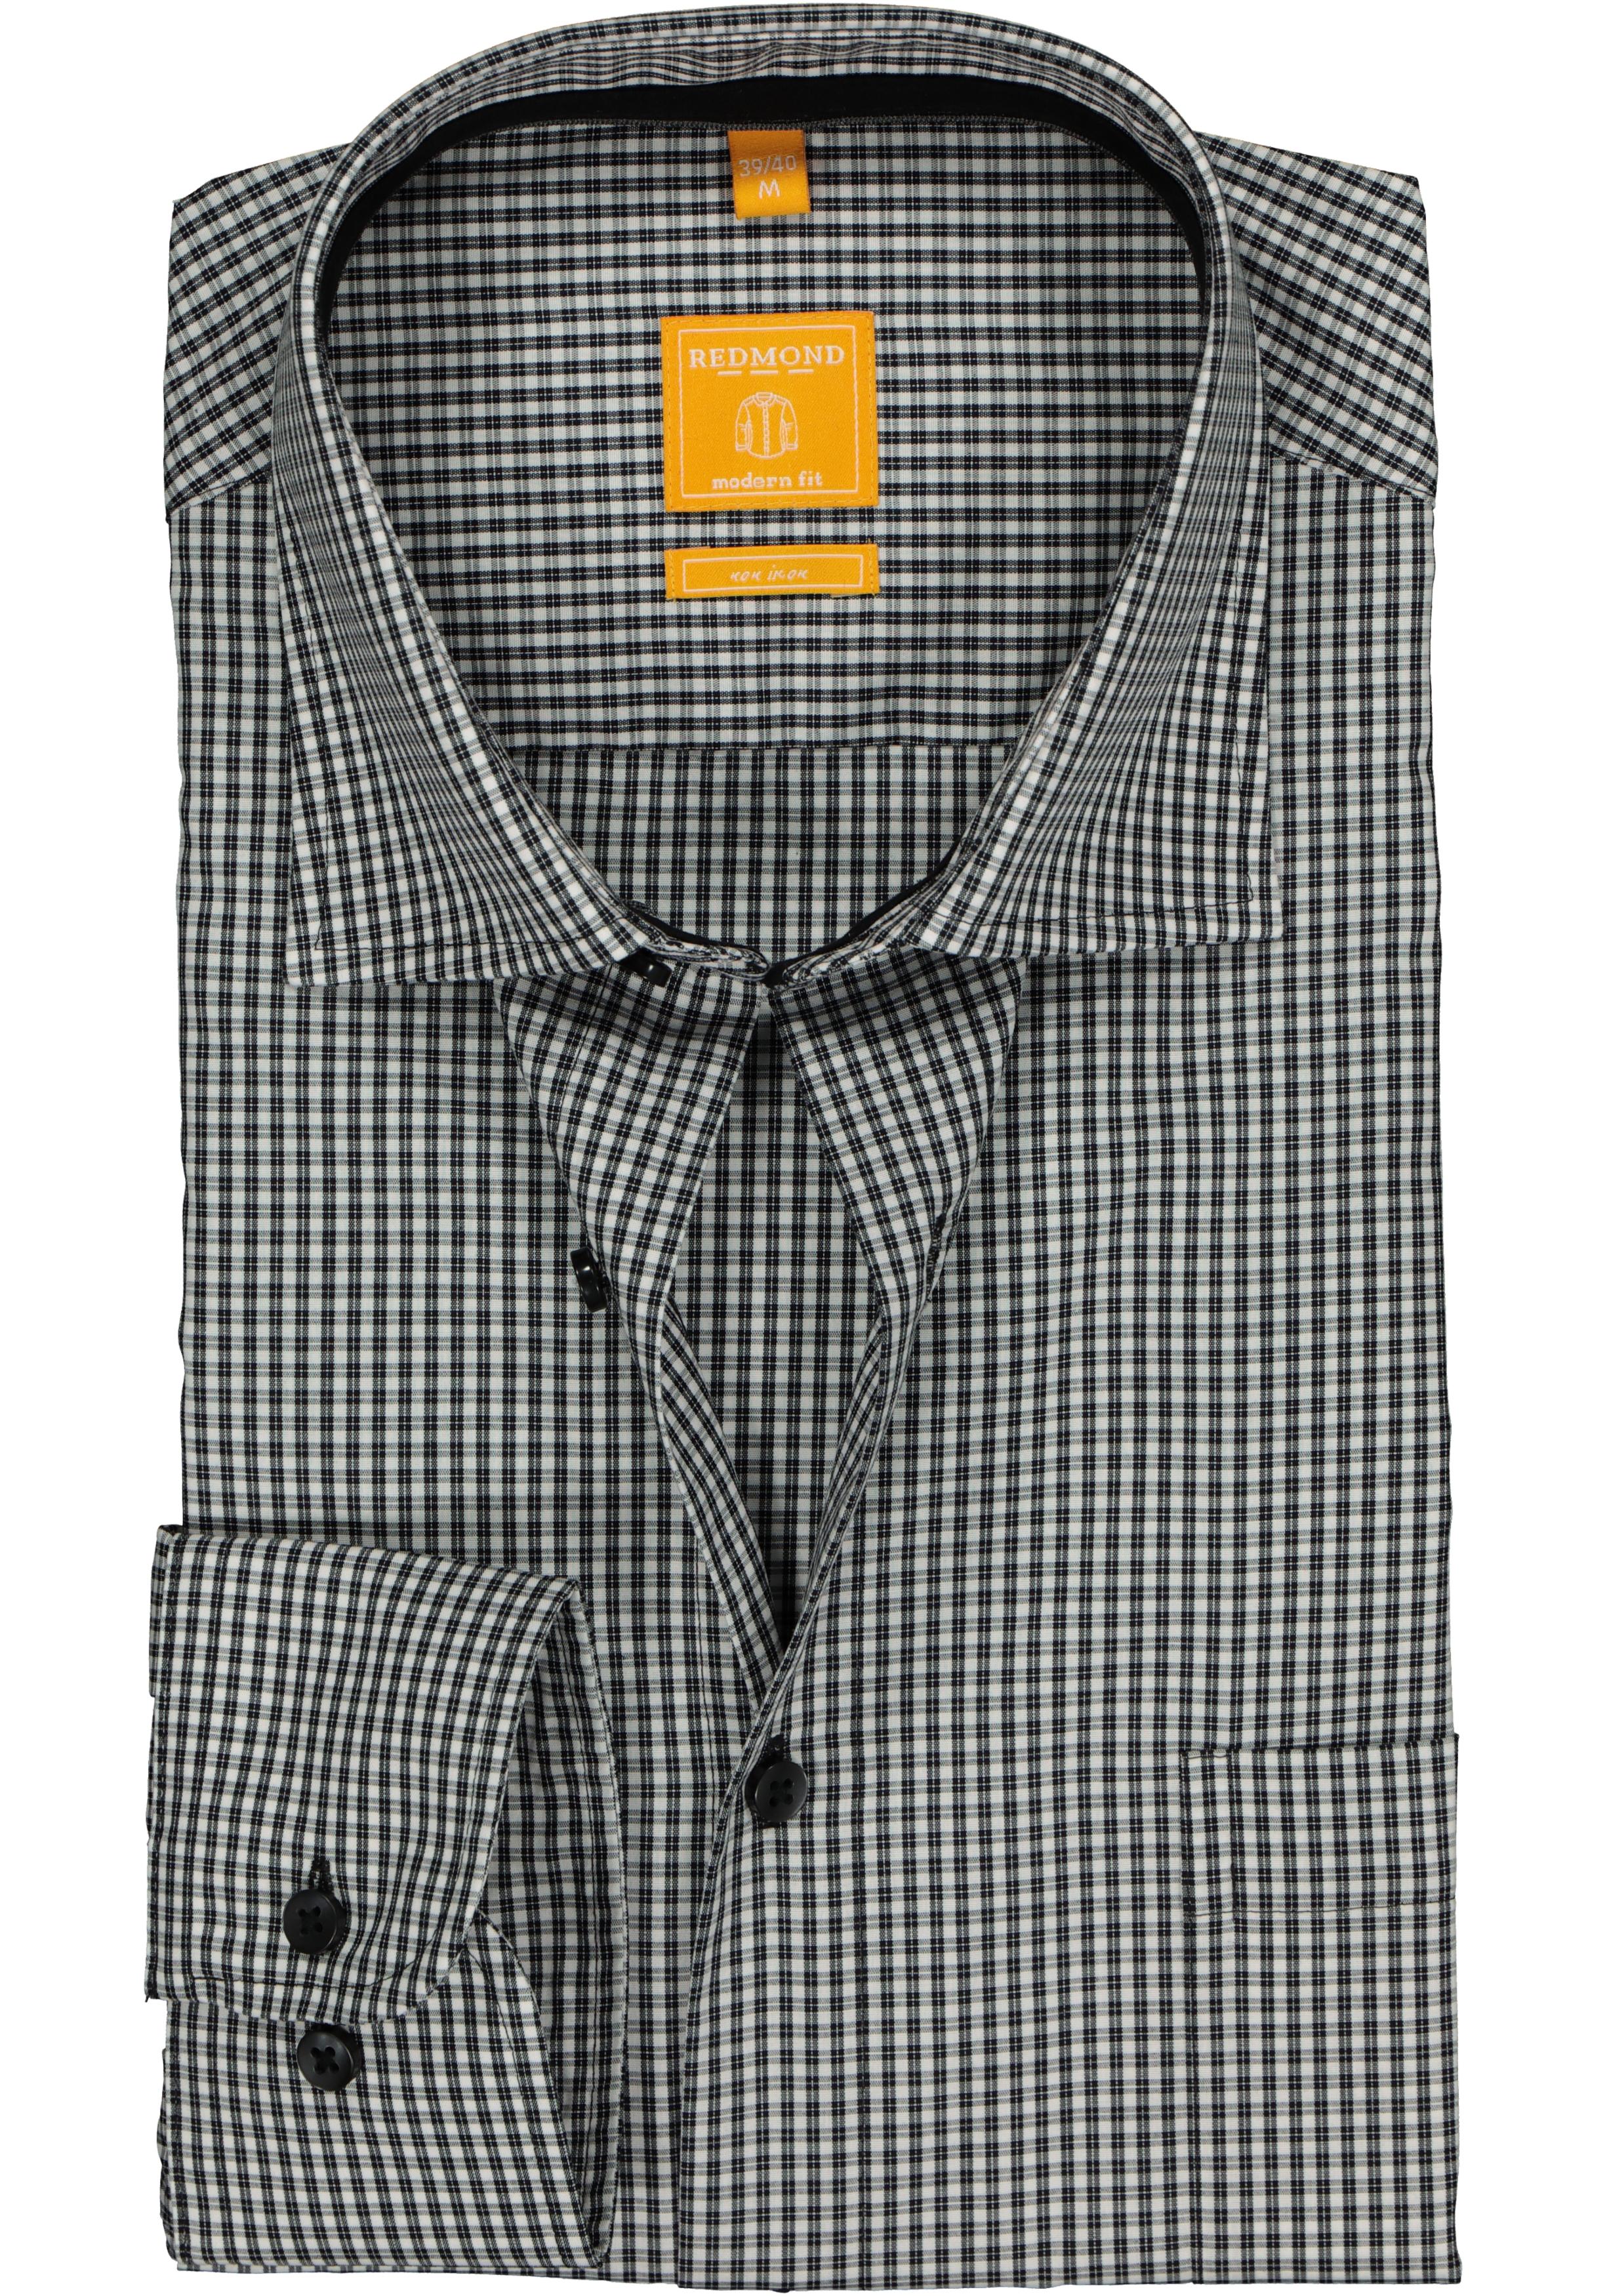 Lief uitbreiden Verfijnen Redmond modern fit overhemd, zwart-wit geruit (contrast) - Shop de nieuwste  voorjaarsmode